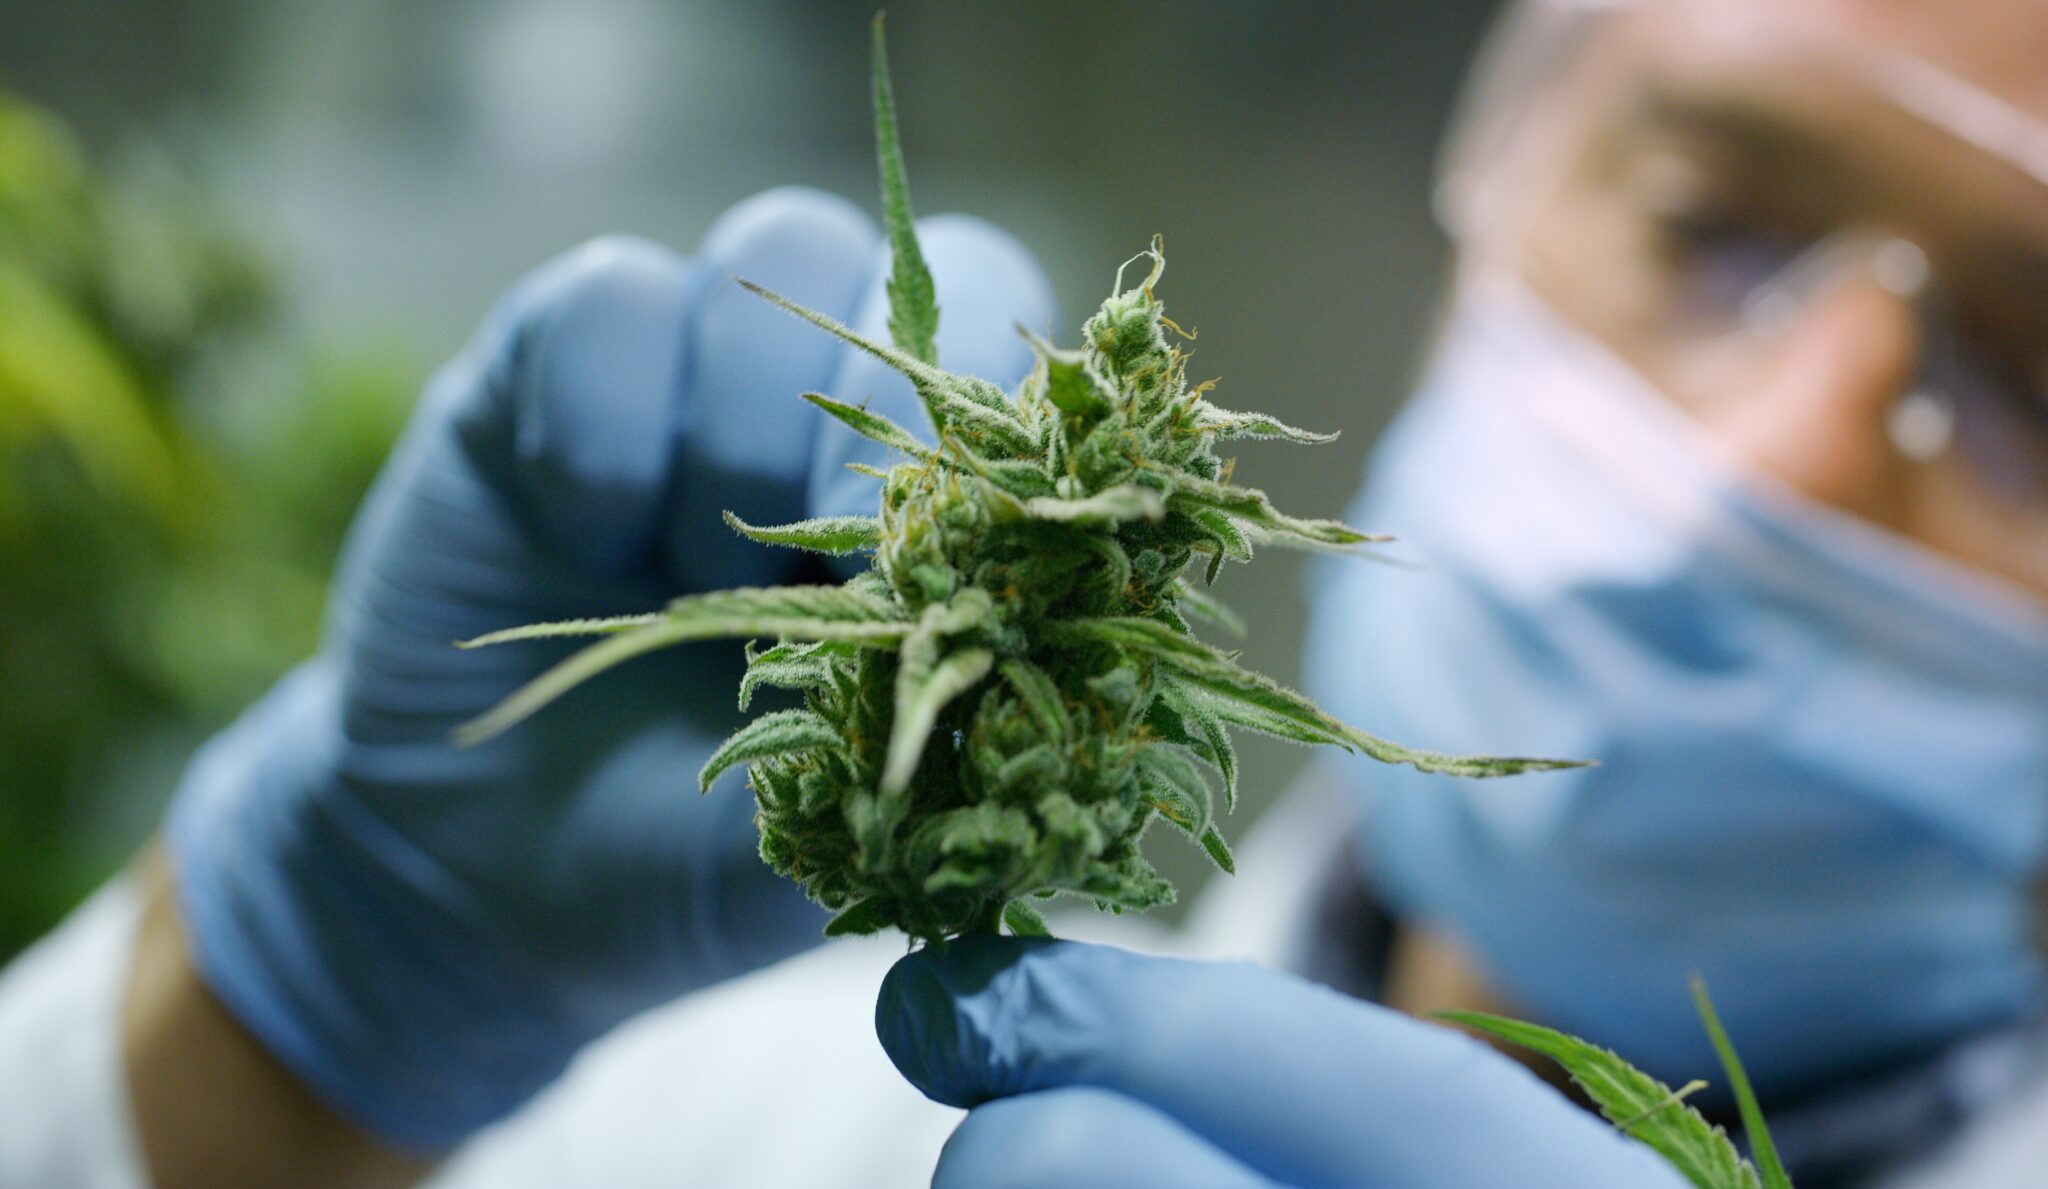 Health Meds aproveita Agosto Laranja para conscientizar sobre efeitos positivos da Cannabis na esclerose múltipla